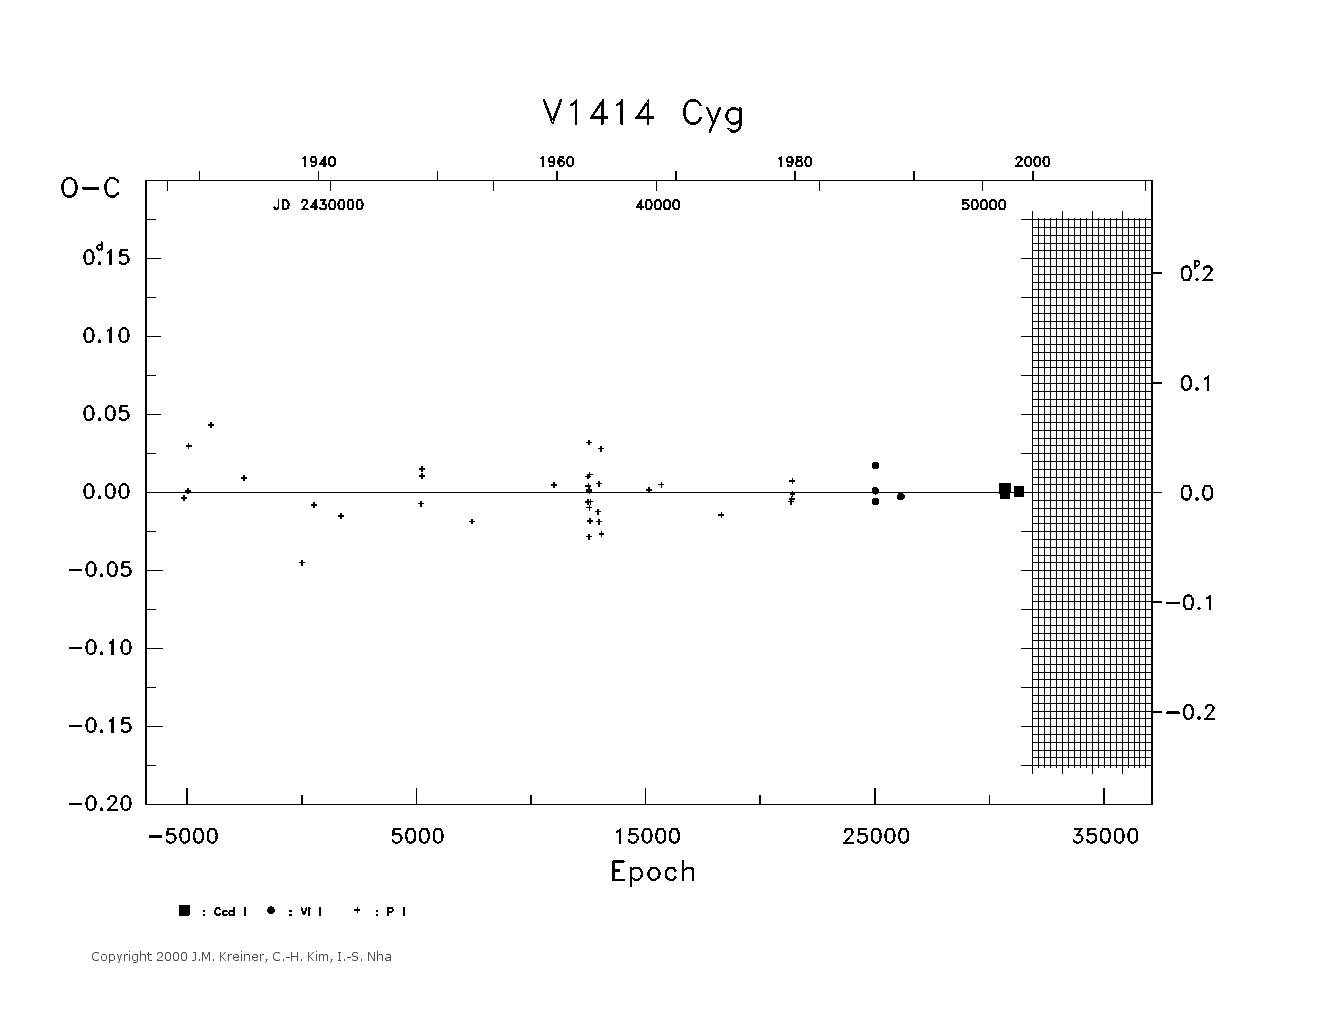 [IMAGE: large V1414 CYG O-C diagram]